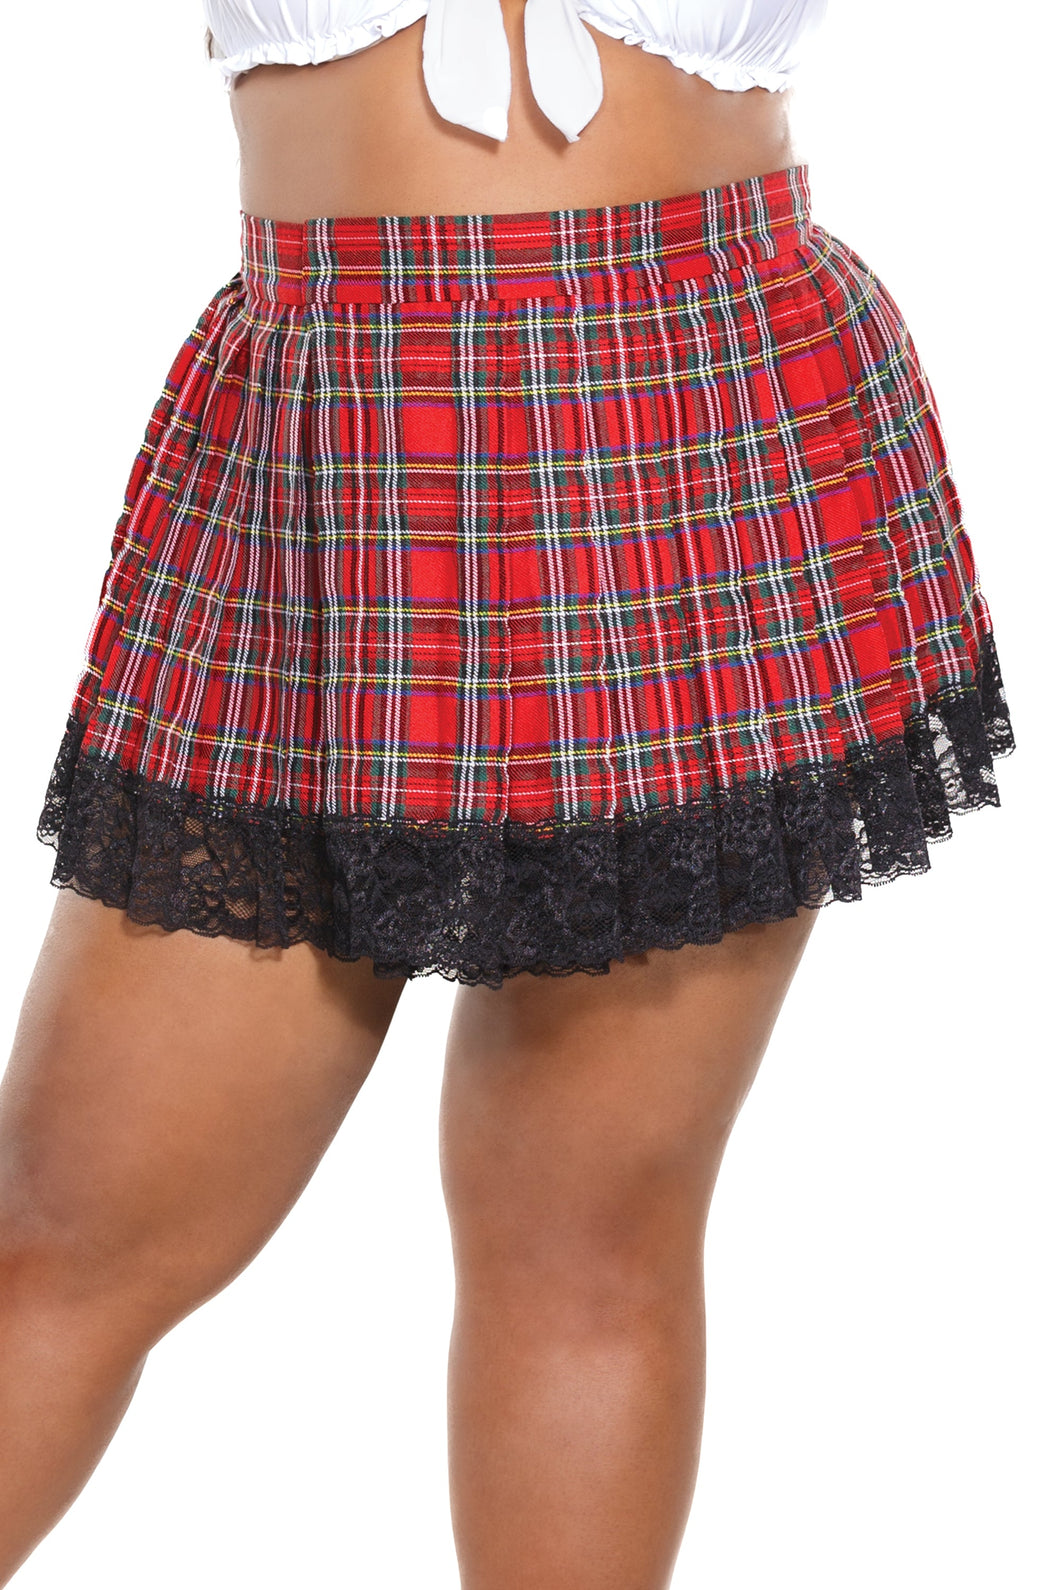 23170X - Pleated Skirt - OS/XL